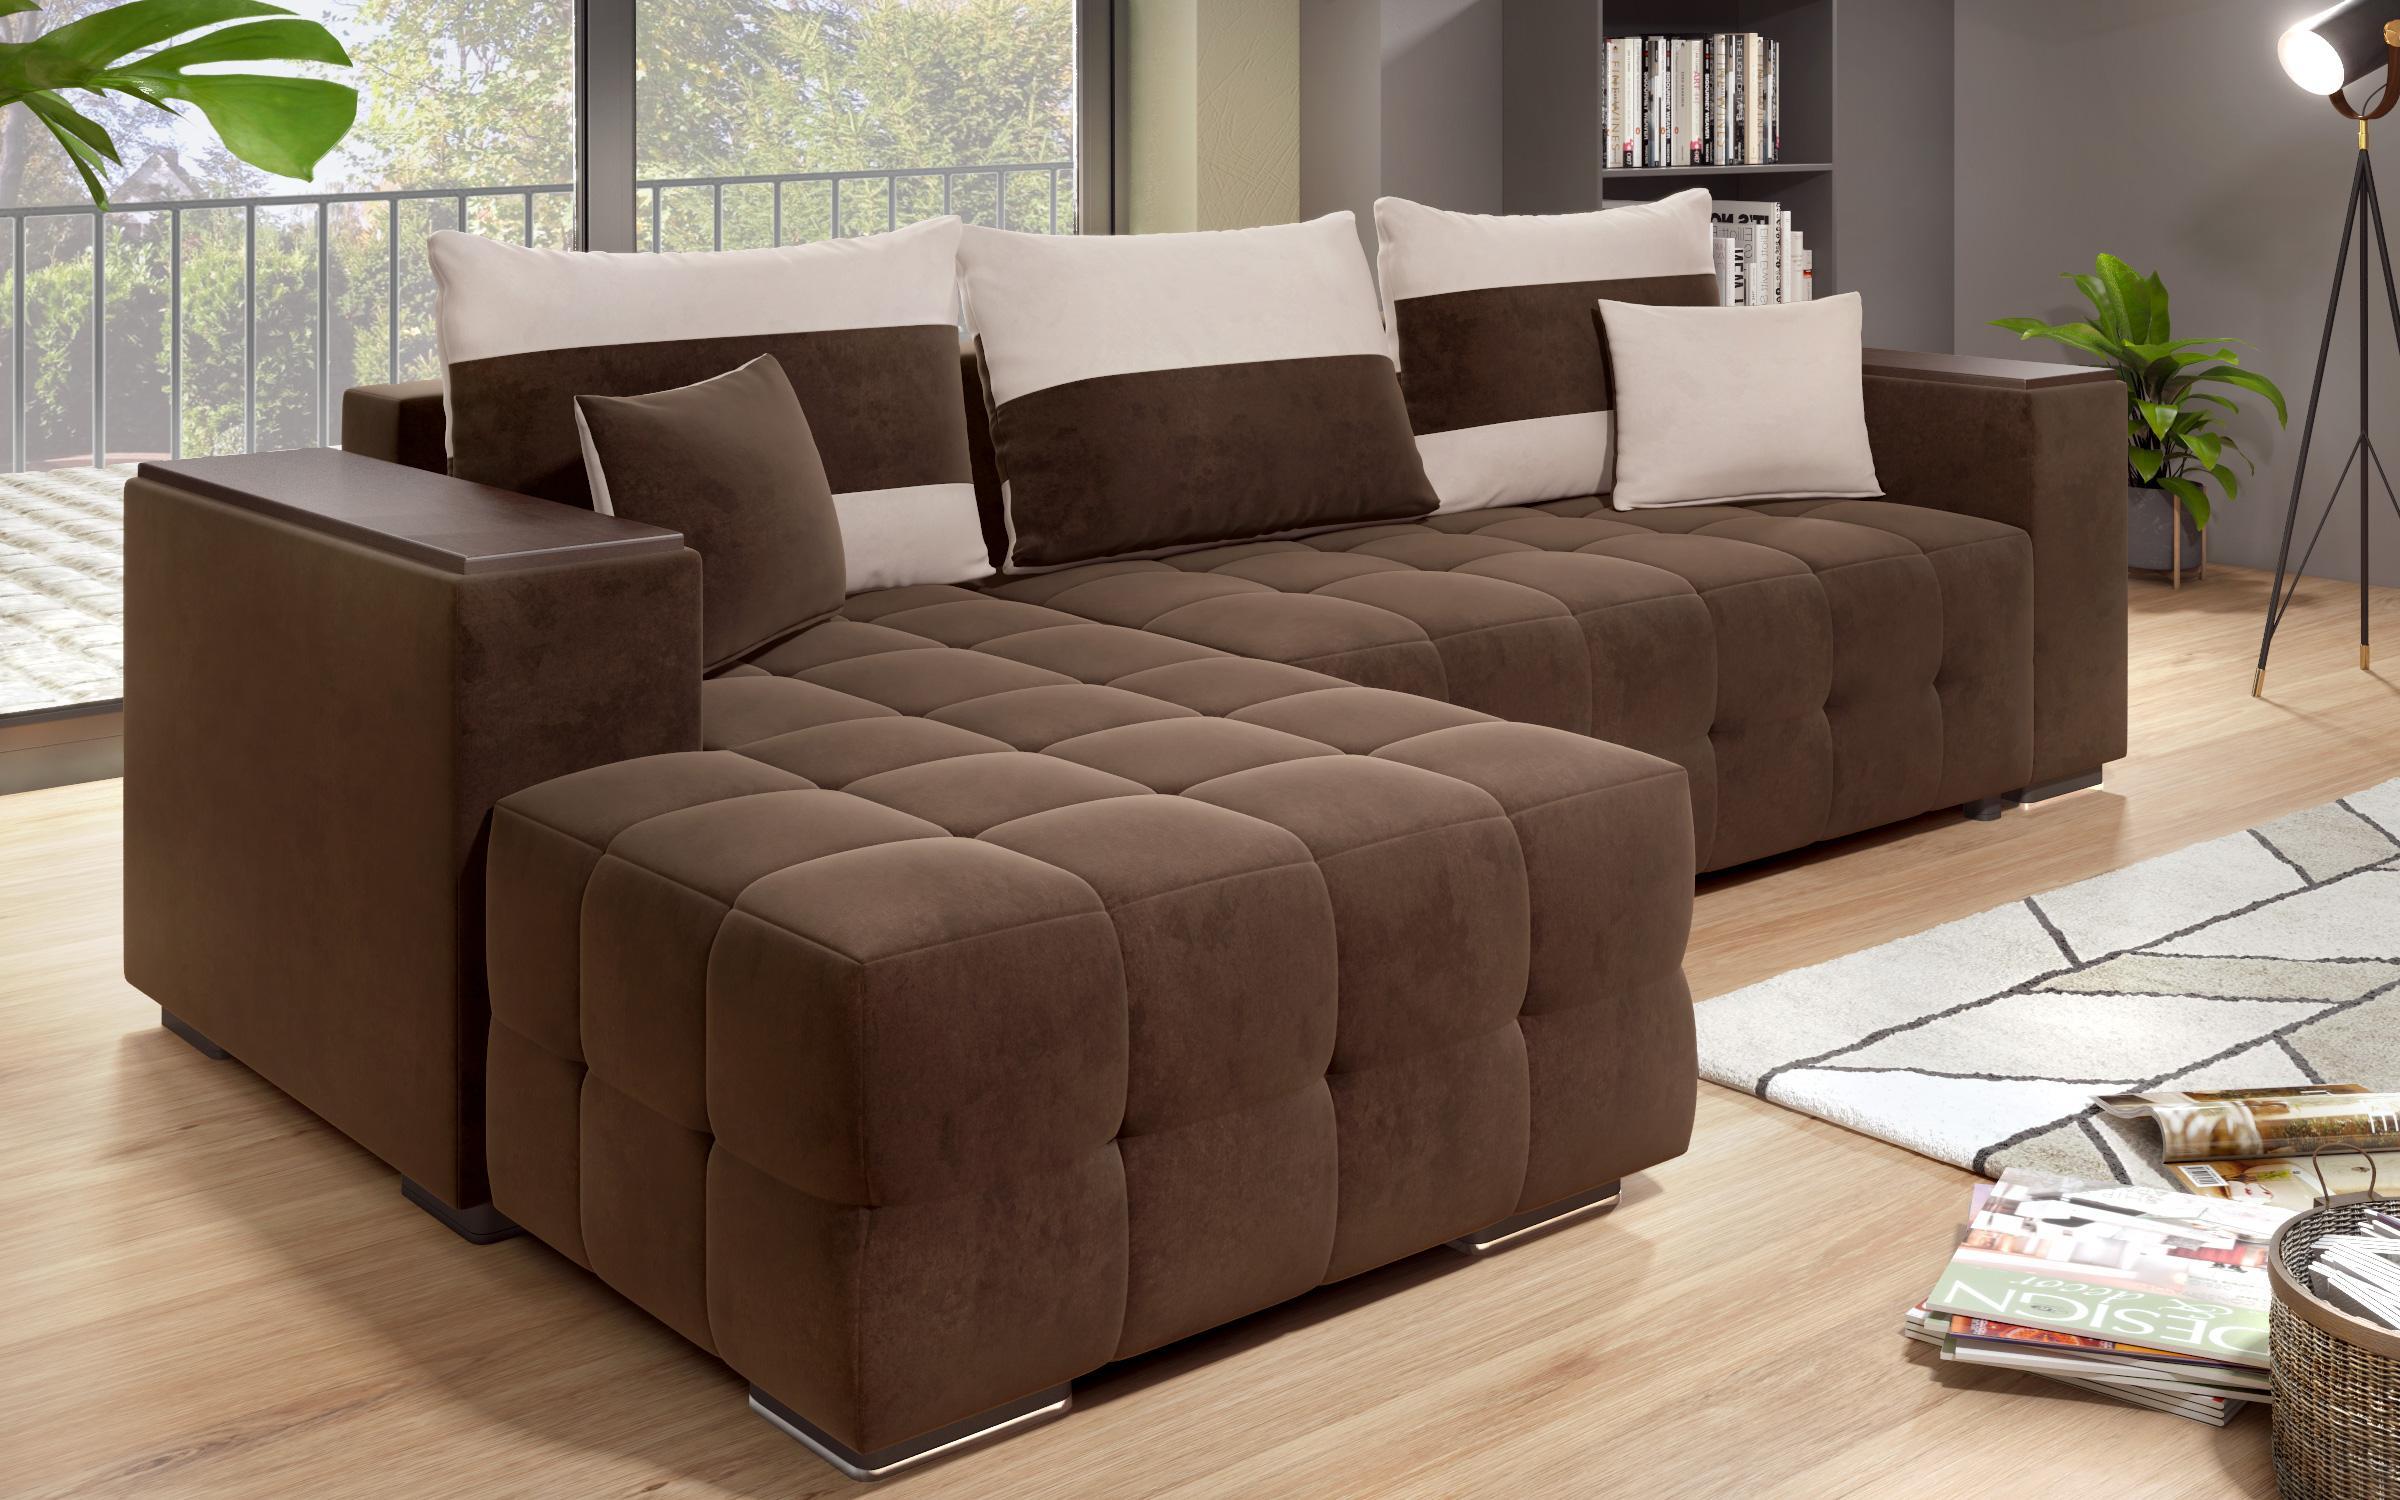 Γωνιακός καναπές - κρεβάτι με ανάκλιντρο και μπράτσο μίνι ραφιέρα Melvin S, σκούρο καφέ + ανοιχτό μπεζ  9